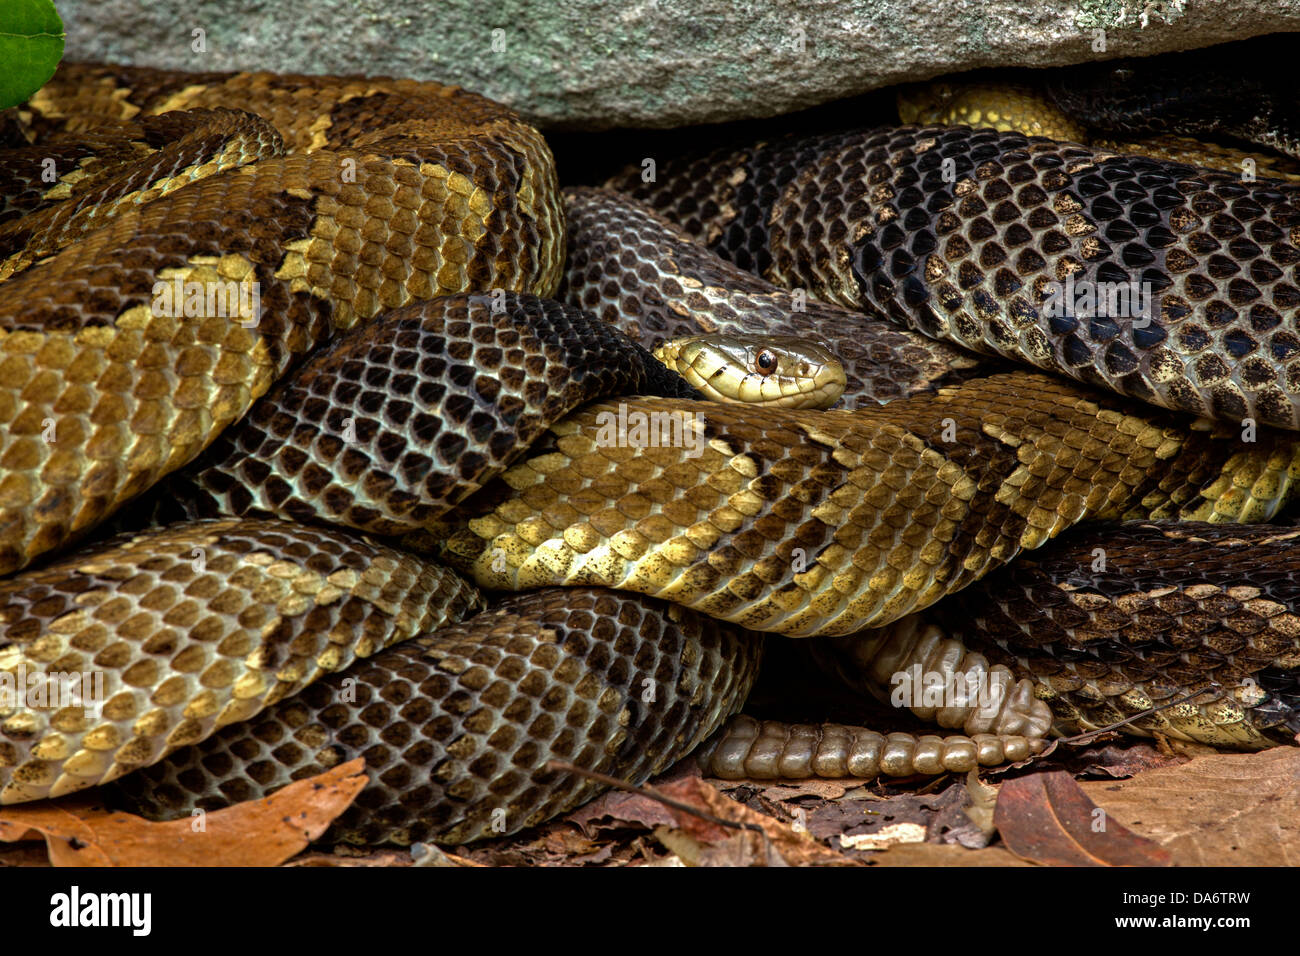 Timber rattlesnakes, Crotalus horridus, Pennsylvania,gravid females basking, common garter snake Thamnophis sirtalis present too Stock Photo